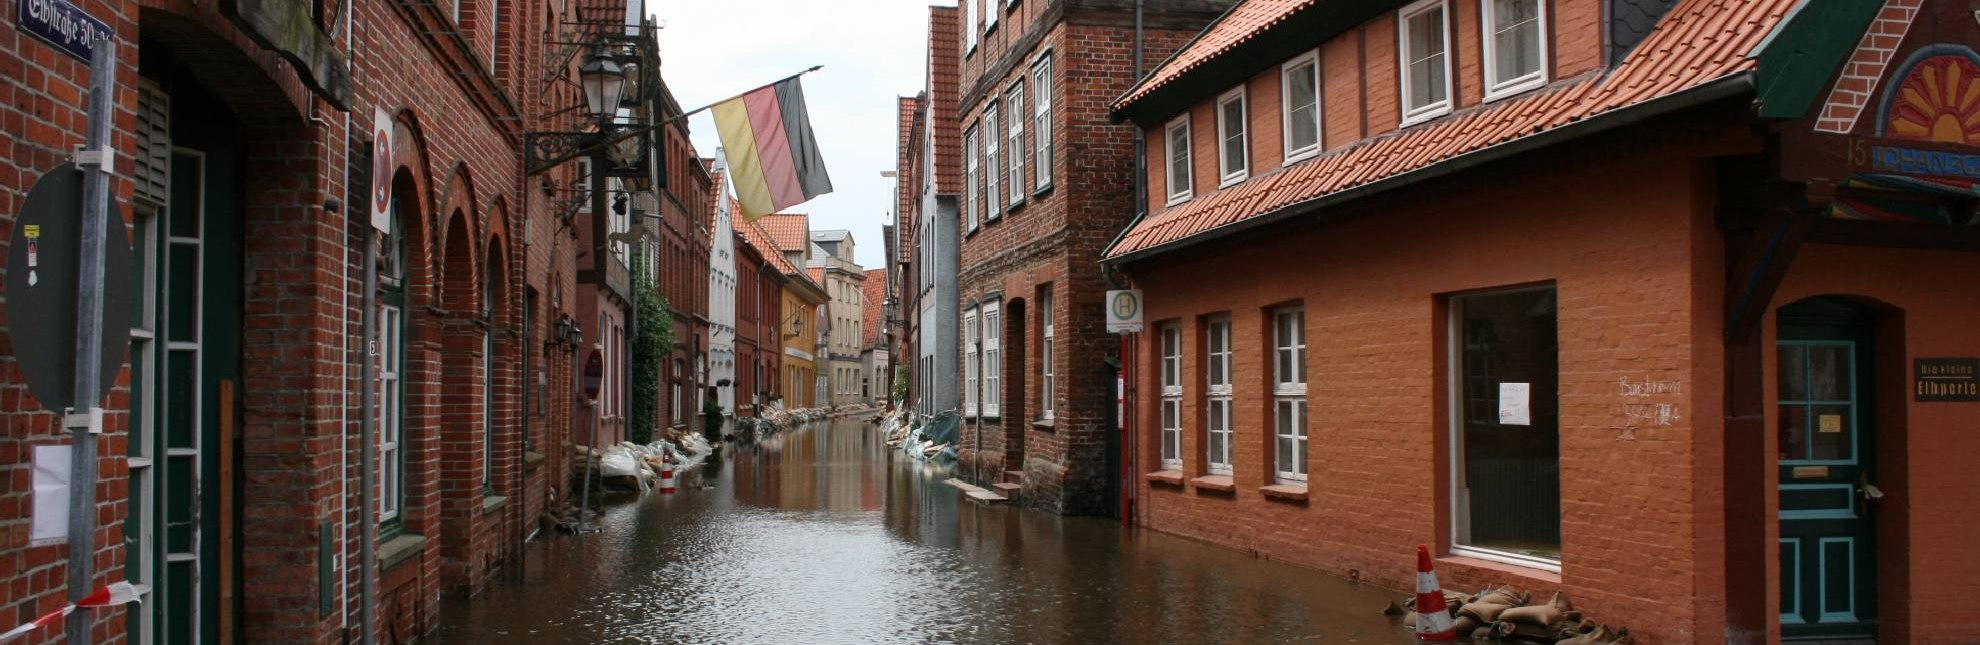 Hochwasser im Jahr 2013 in Lauenburg/Elbe, © Stadt Lauenburg/Elbe